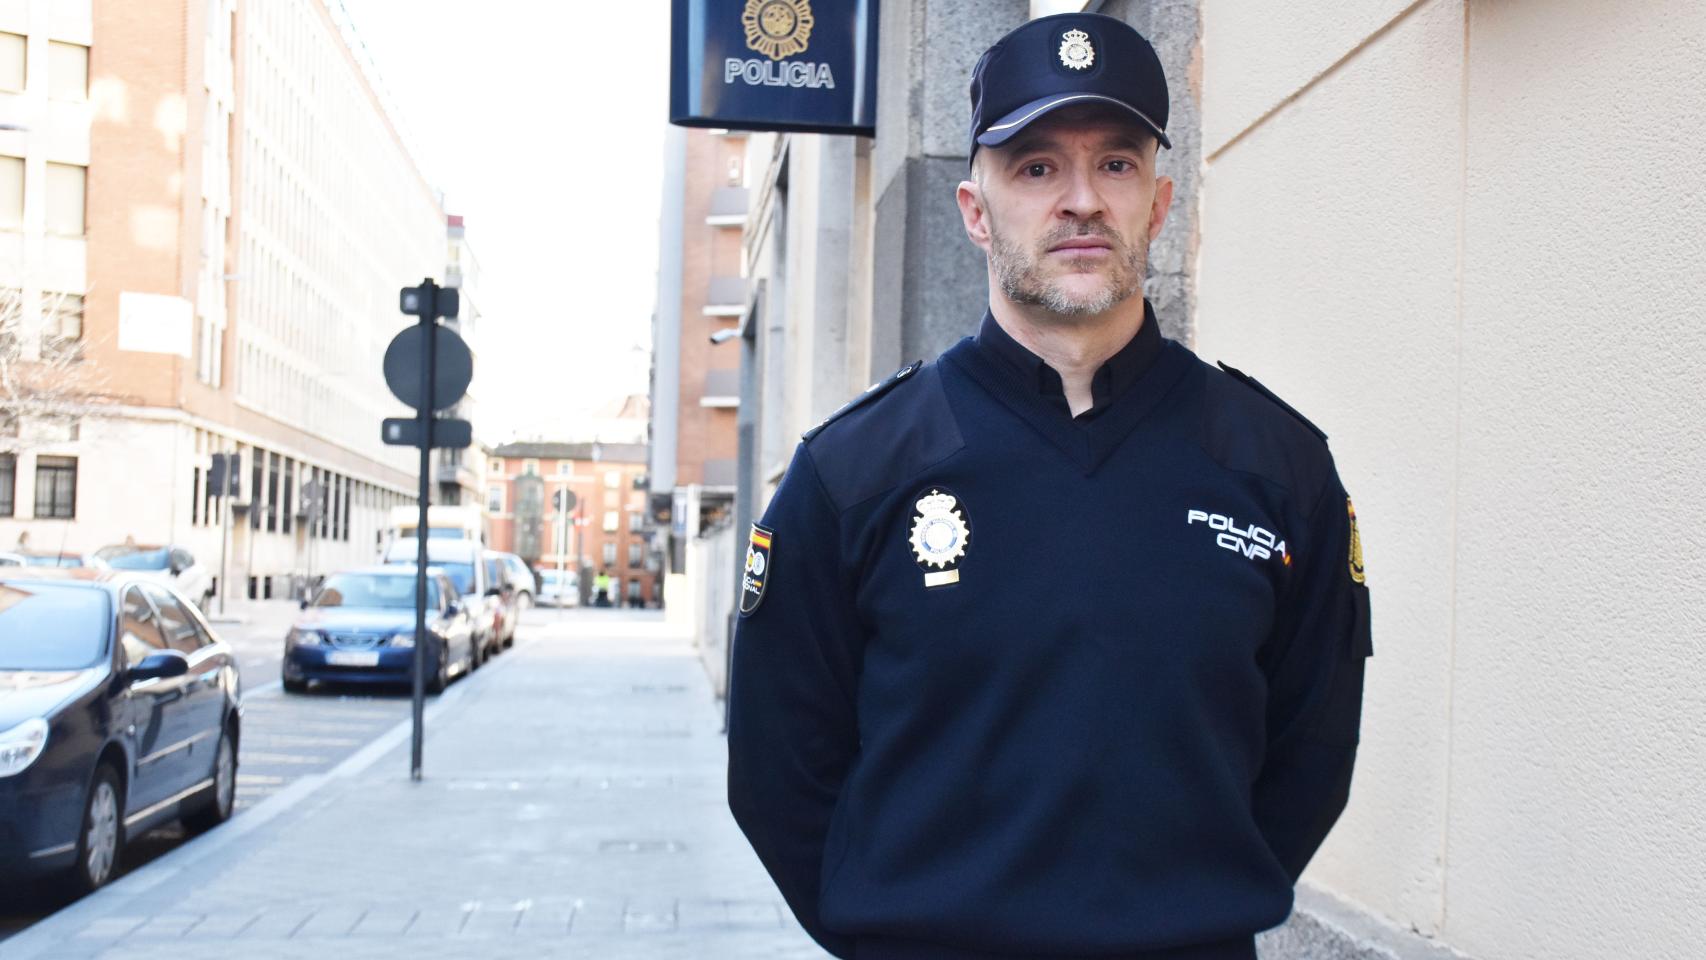 Luis Manuel al lado Jefatura superior de la Policía Nacional en Castilla y León en la calle Felipe II de Valladolid